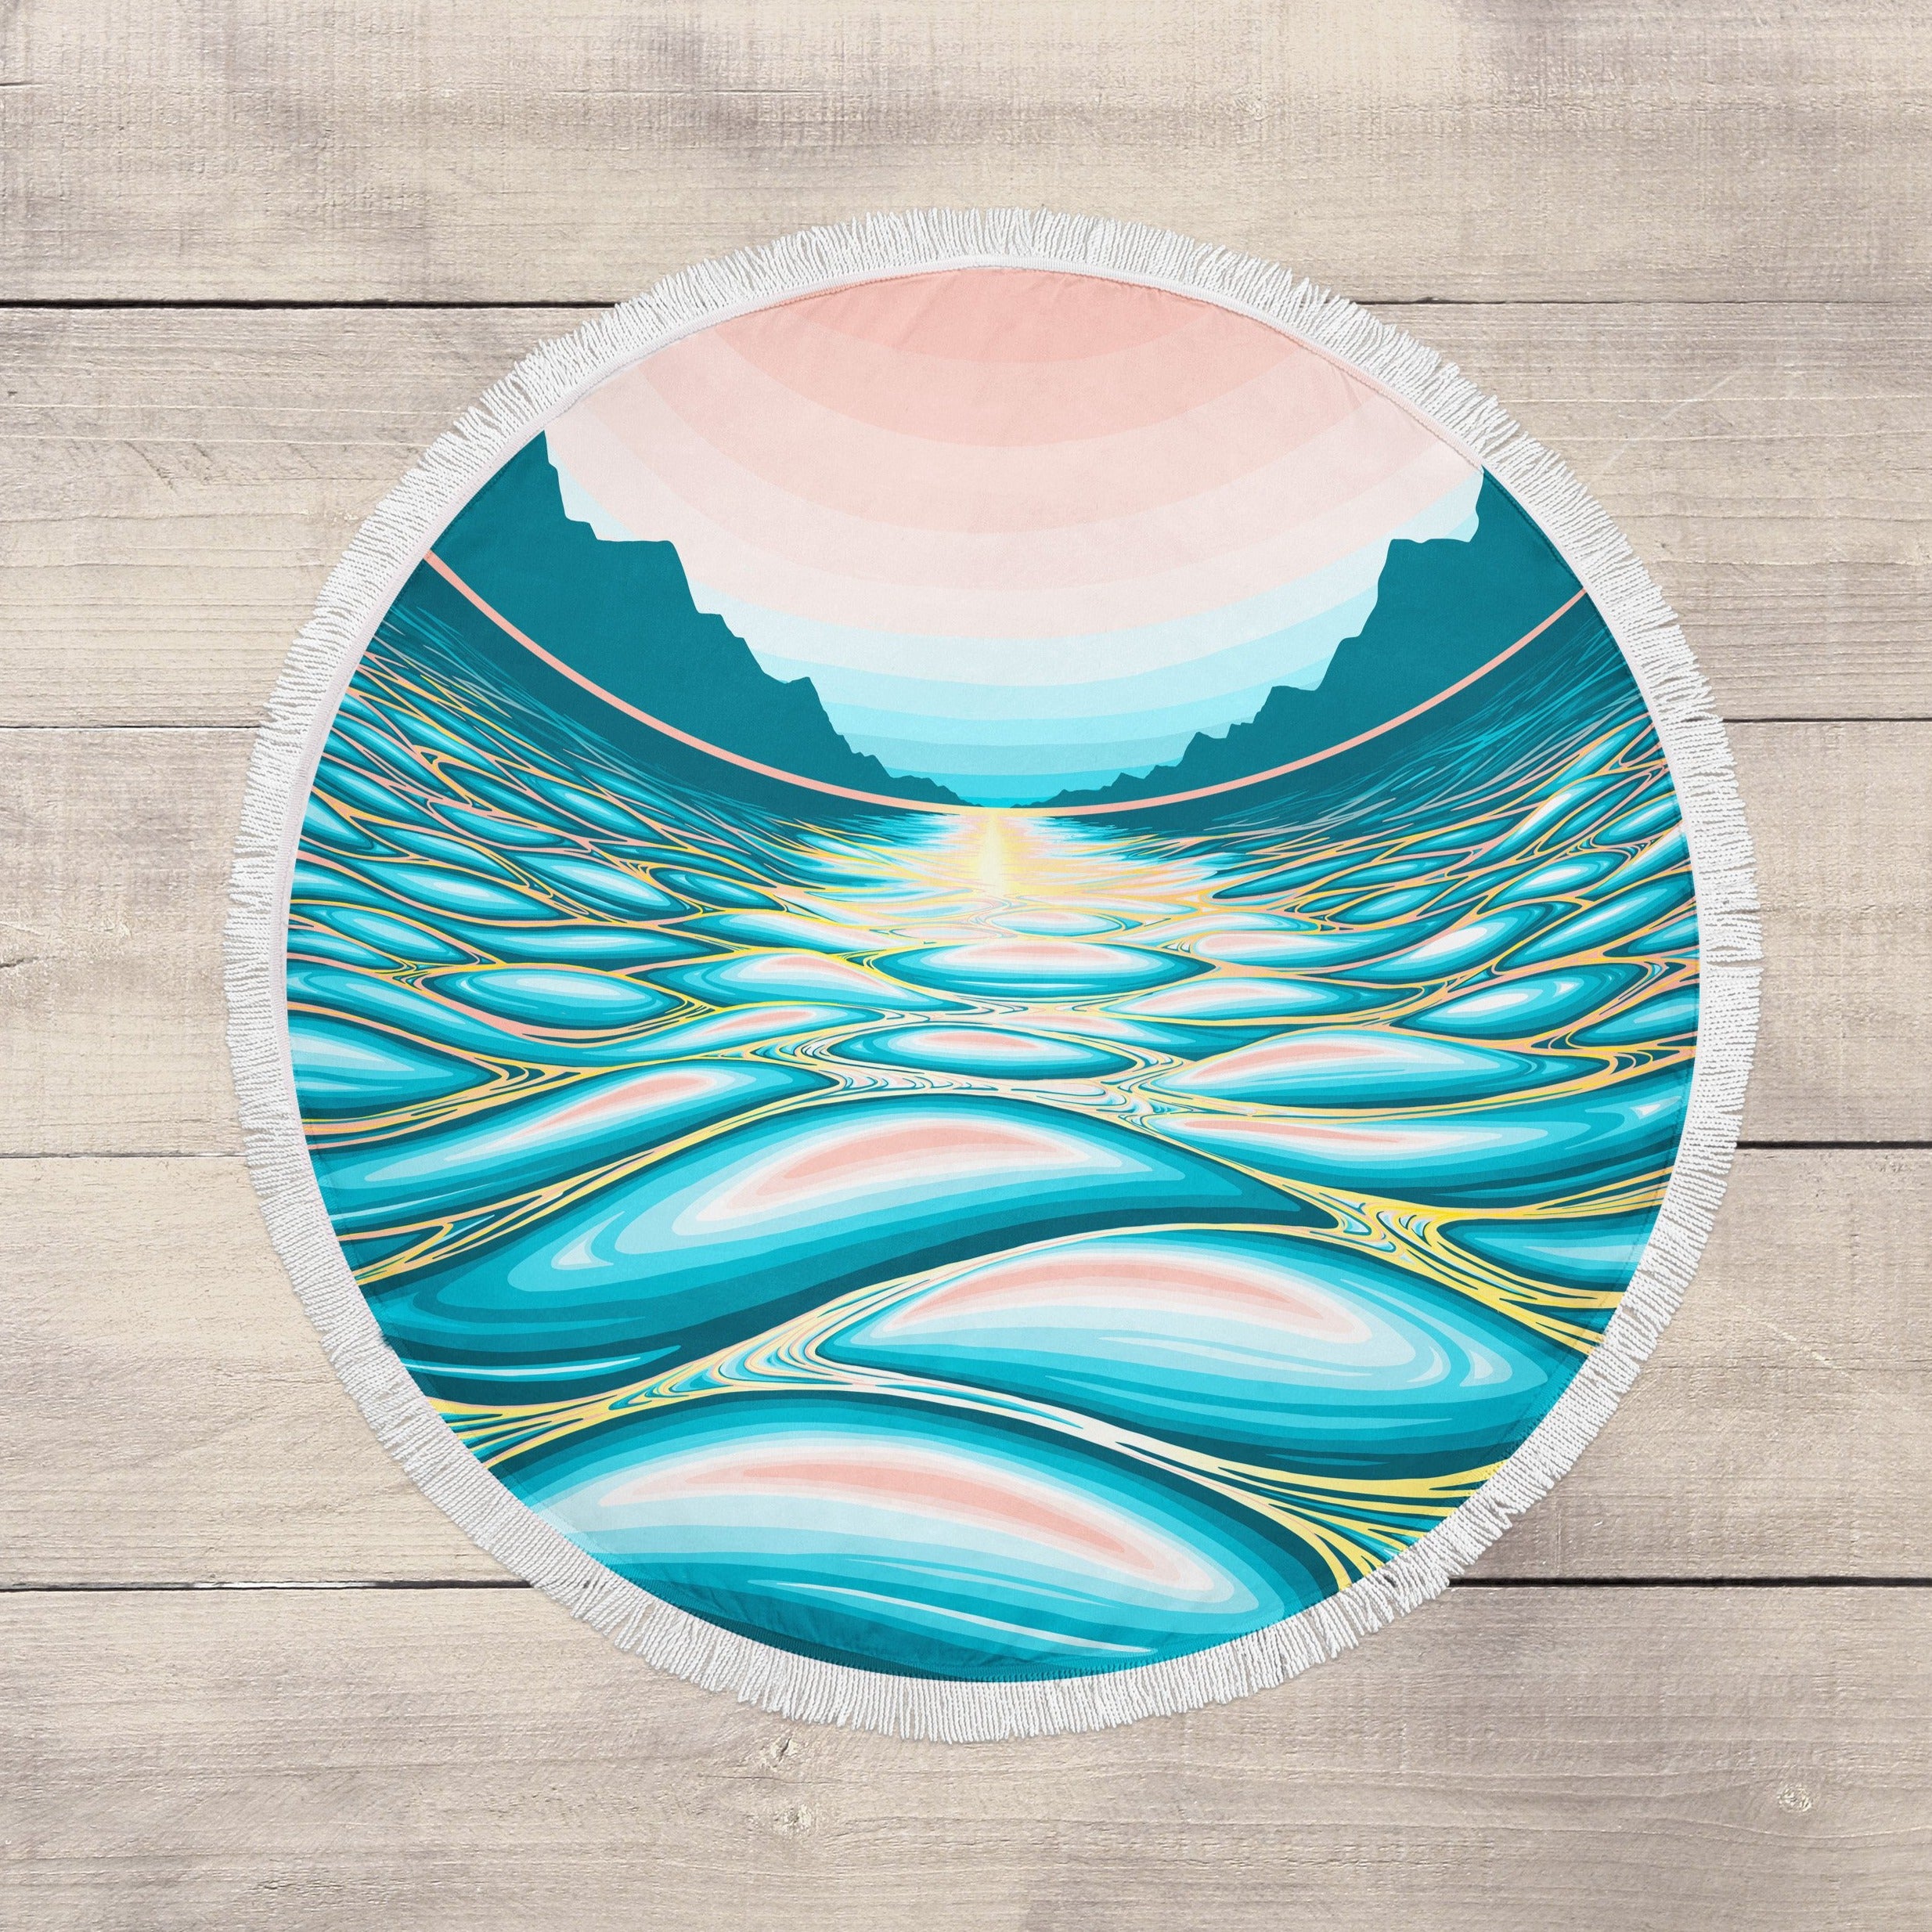 Ocean Eye: By Nat Tuke (Artist Collaboration)